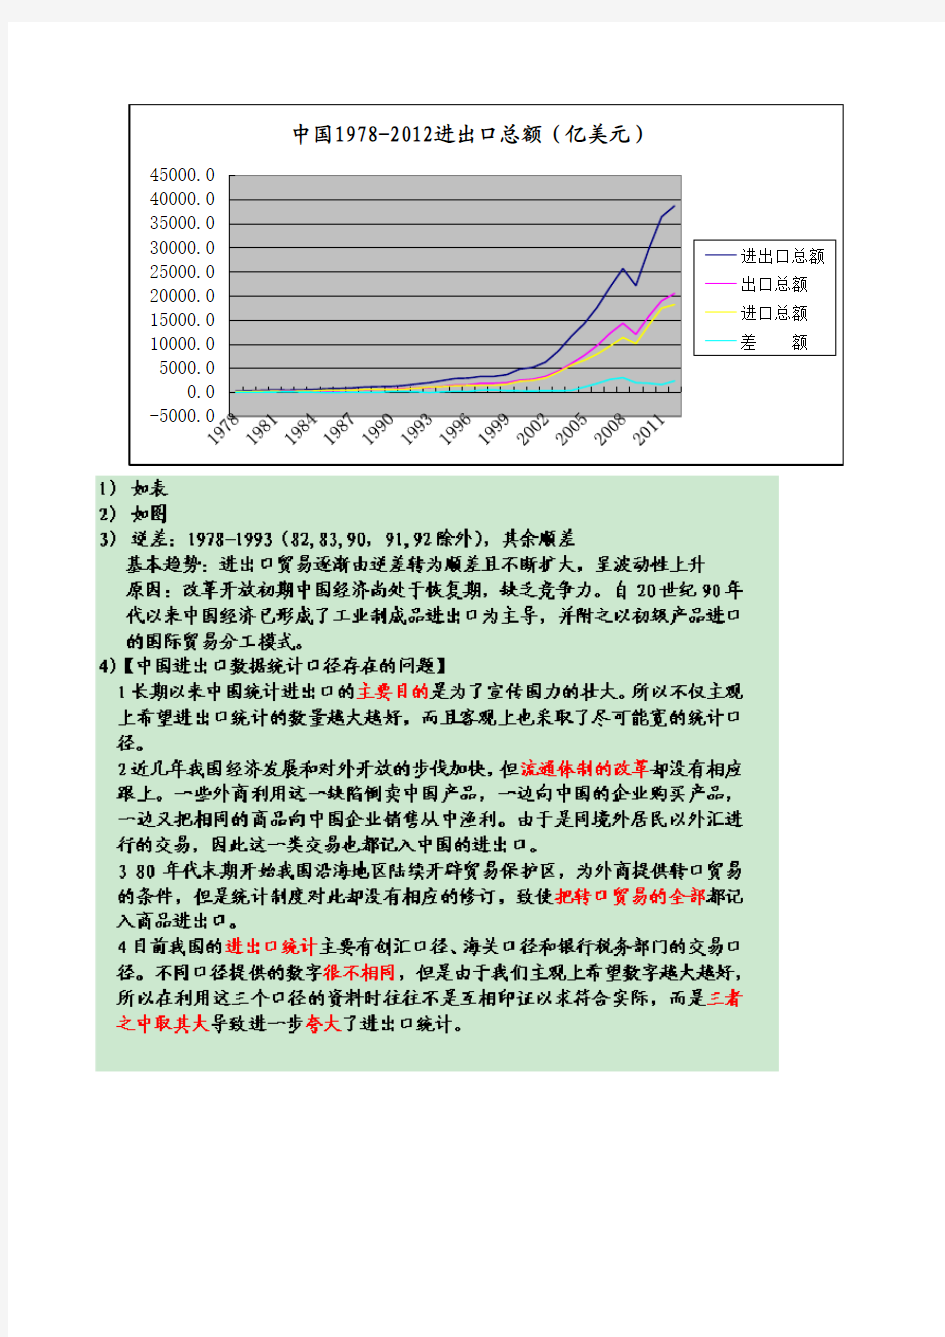 中国1978-2015进出口总额